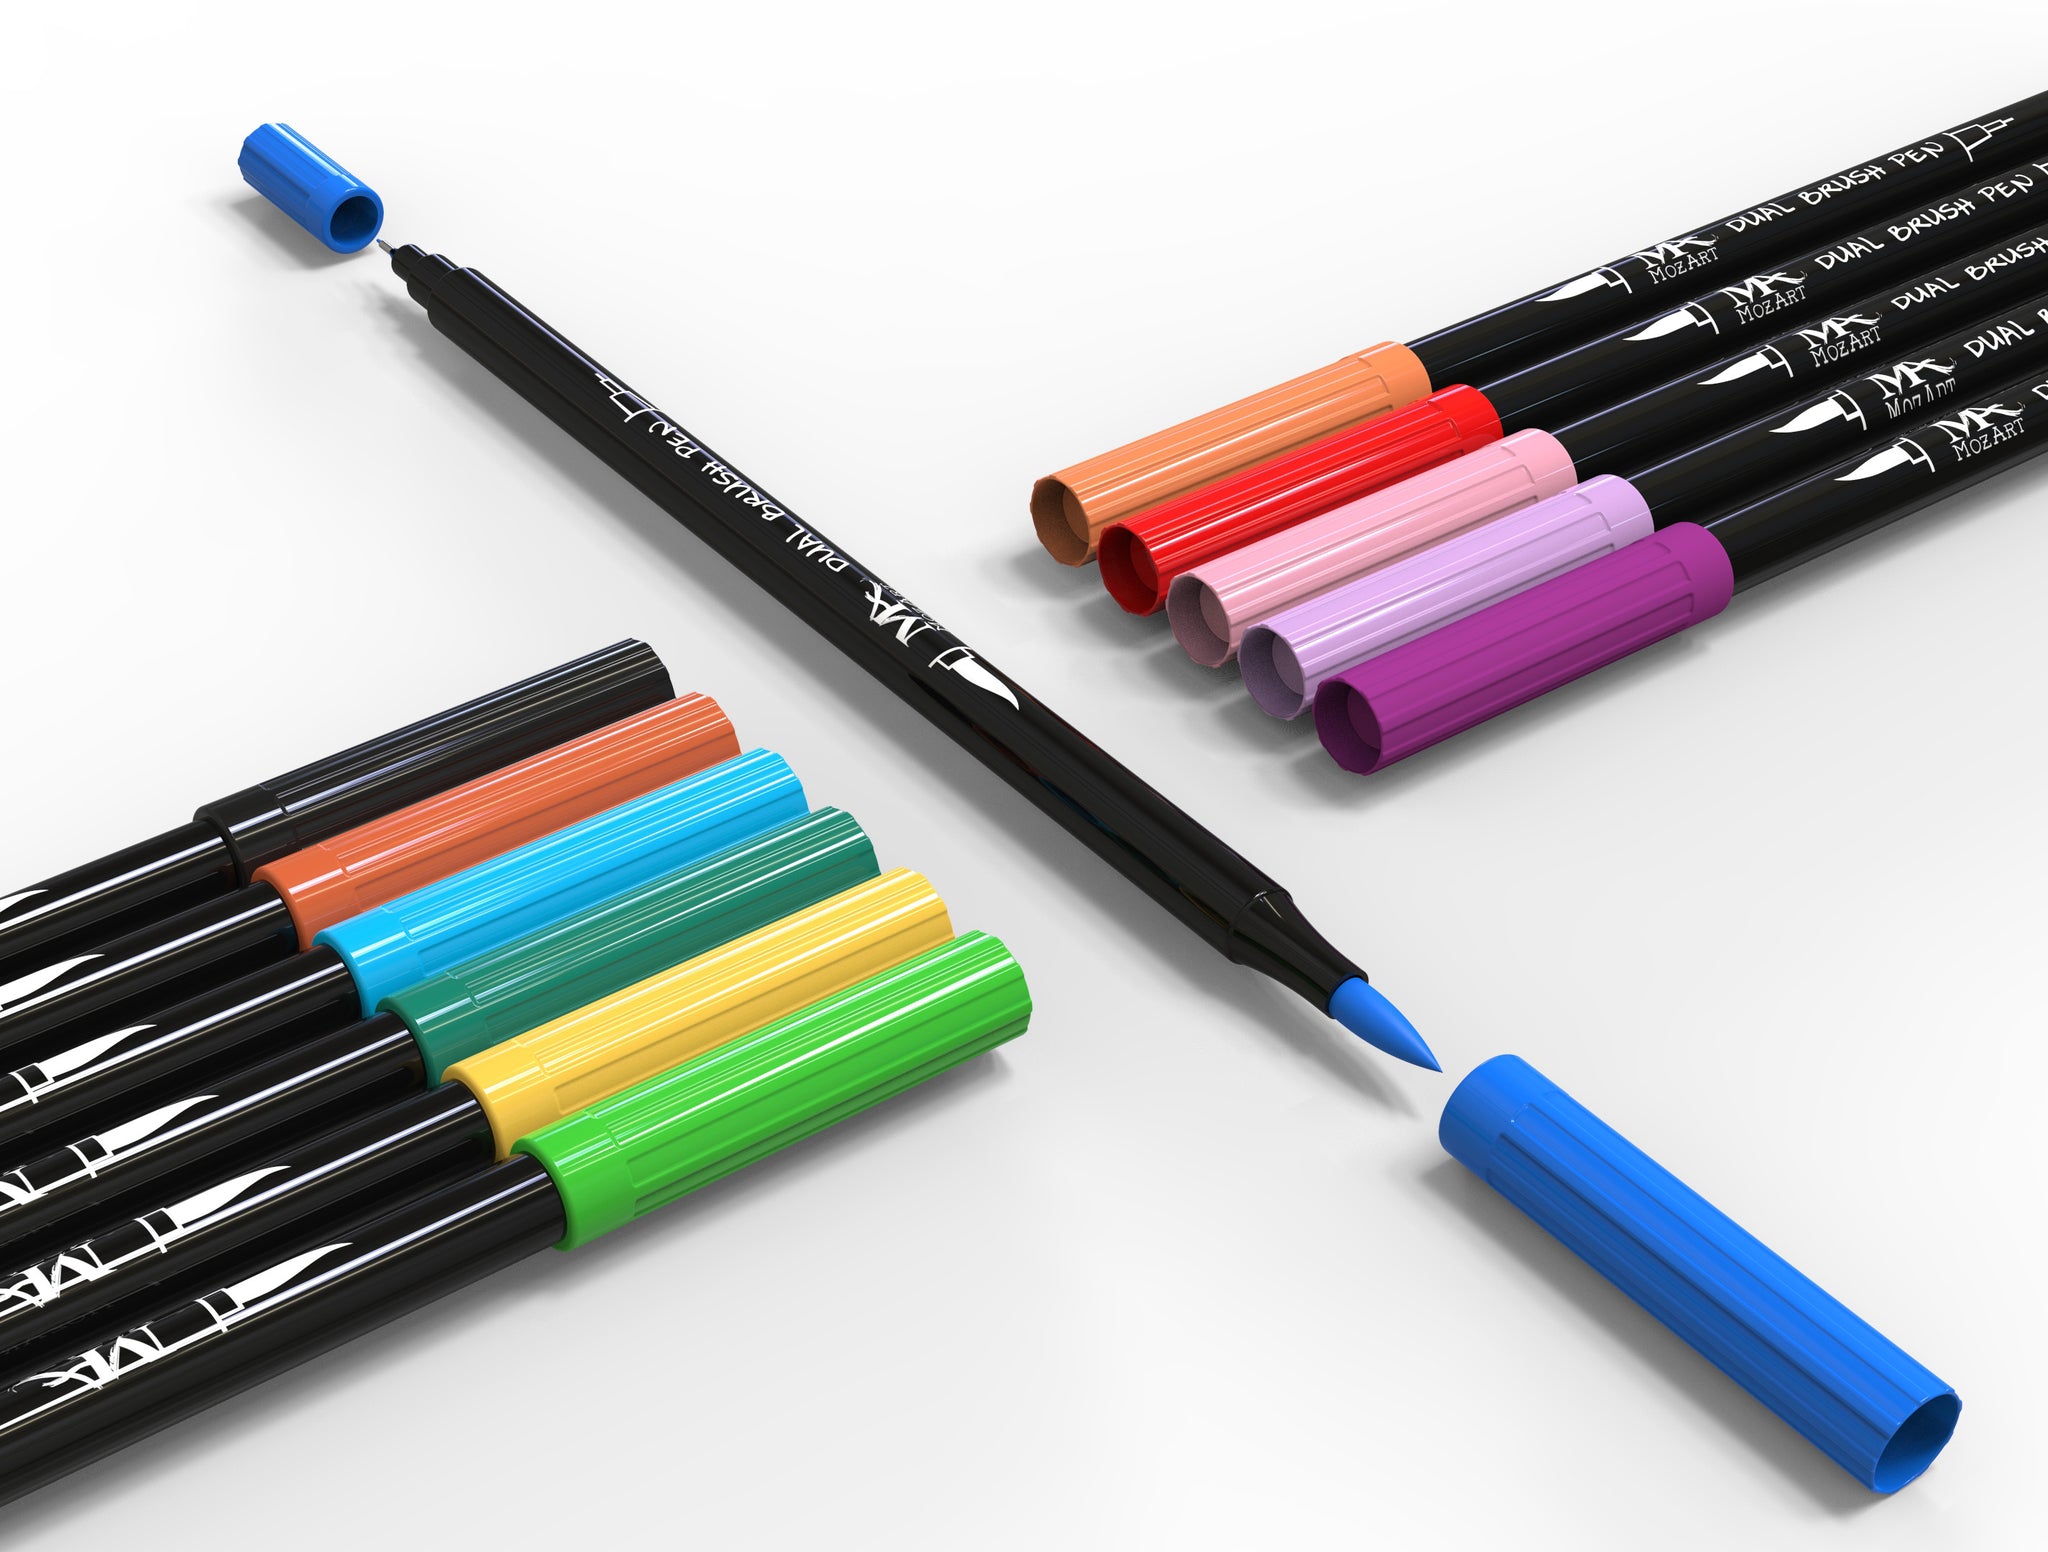 KIRA 12 Colors Dual Tip Brush Pens ,Art Markers